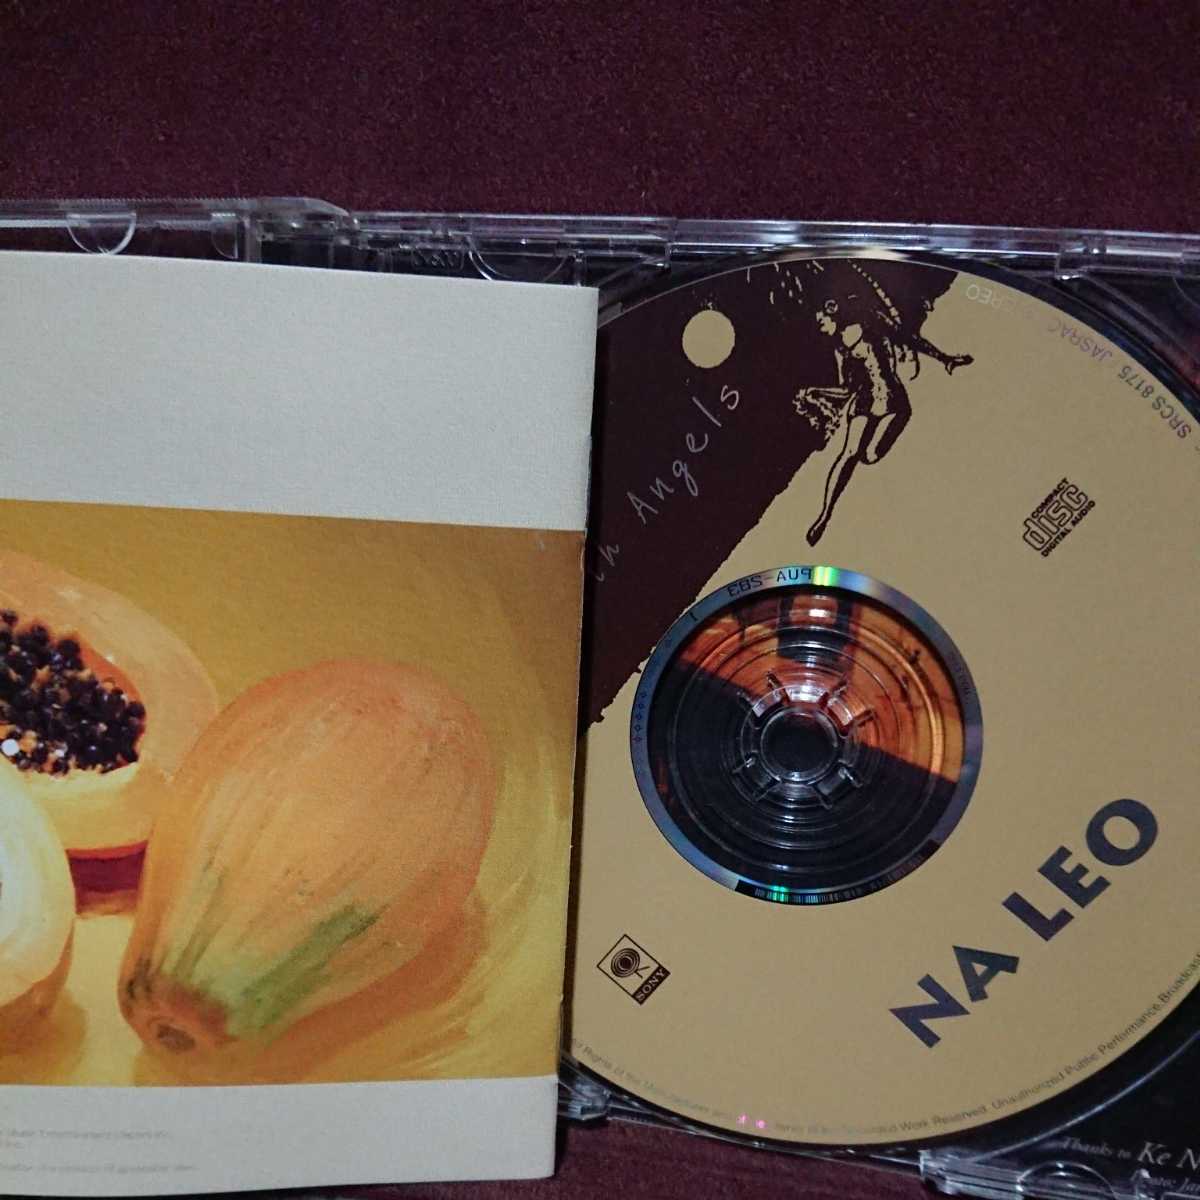 ■③■ ハワイアン ナレオのアルバム「フライング ウイズ エンジェル」 NA LEO